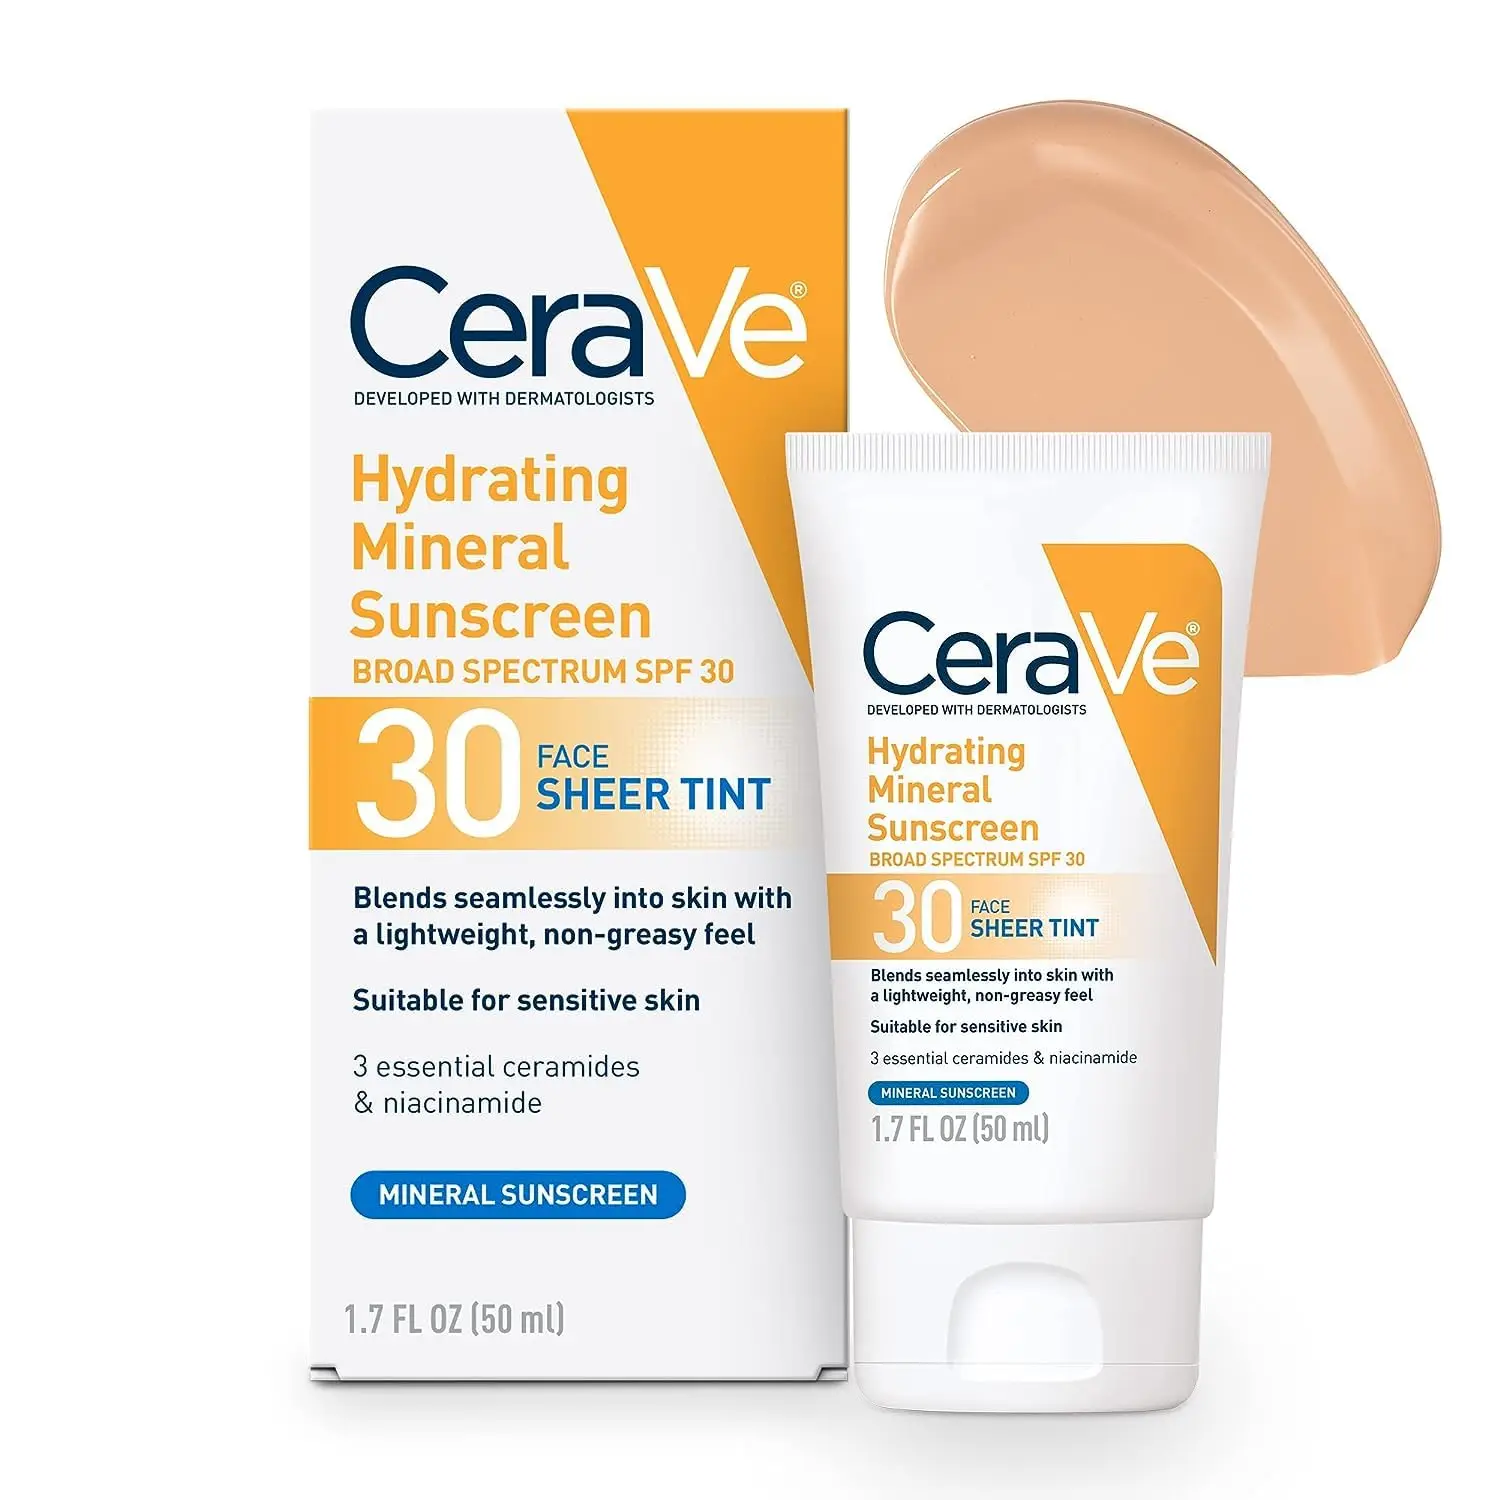 

Увлажняющий минеральный дневной солнцезащитный крем для лица CeraVe с широким спектром Spf 30, увлажняющий крем для лица с прозрачным оттенком для всех типов кожи